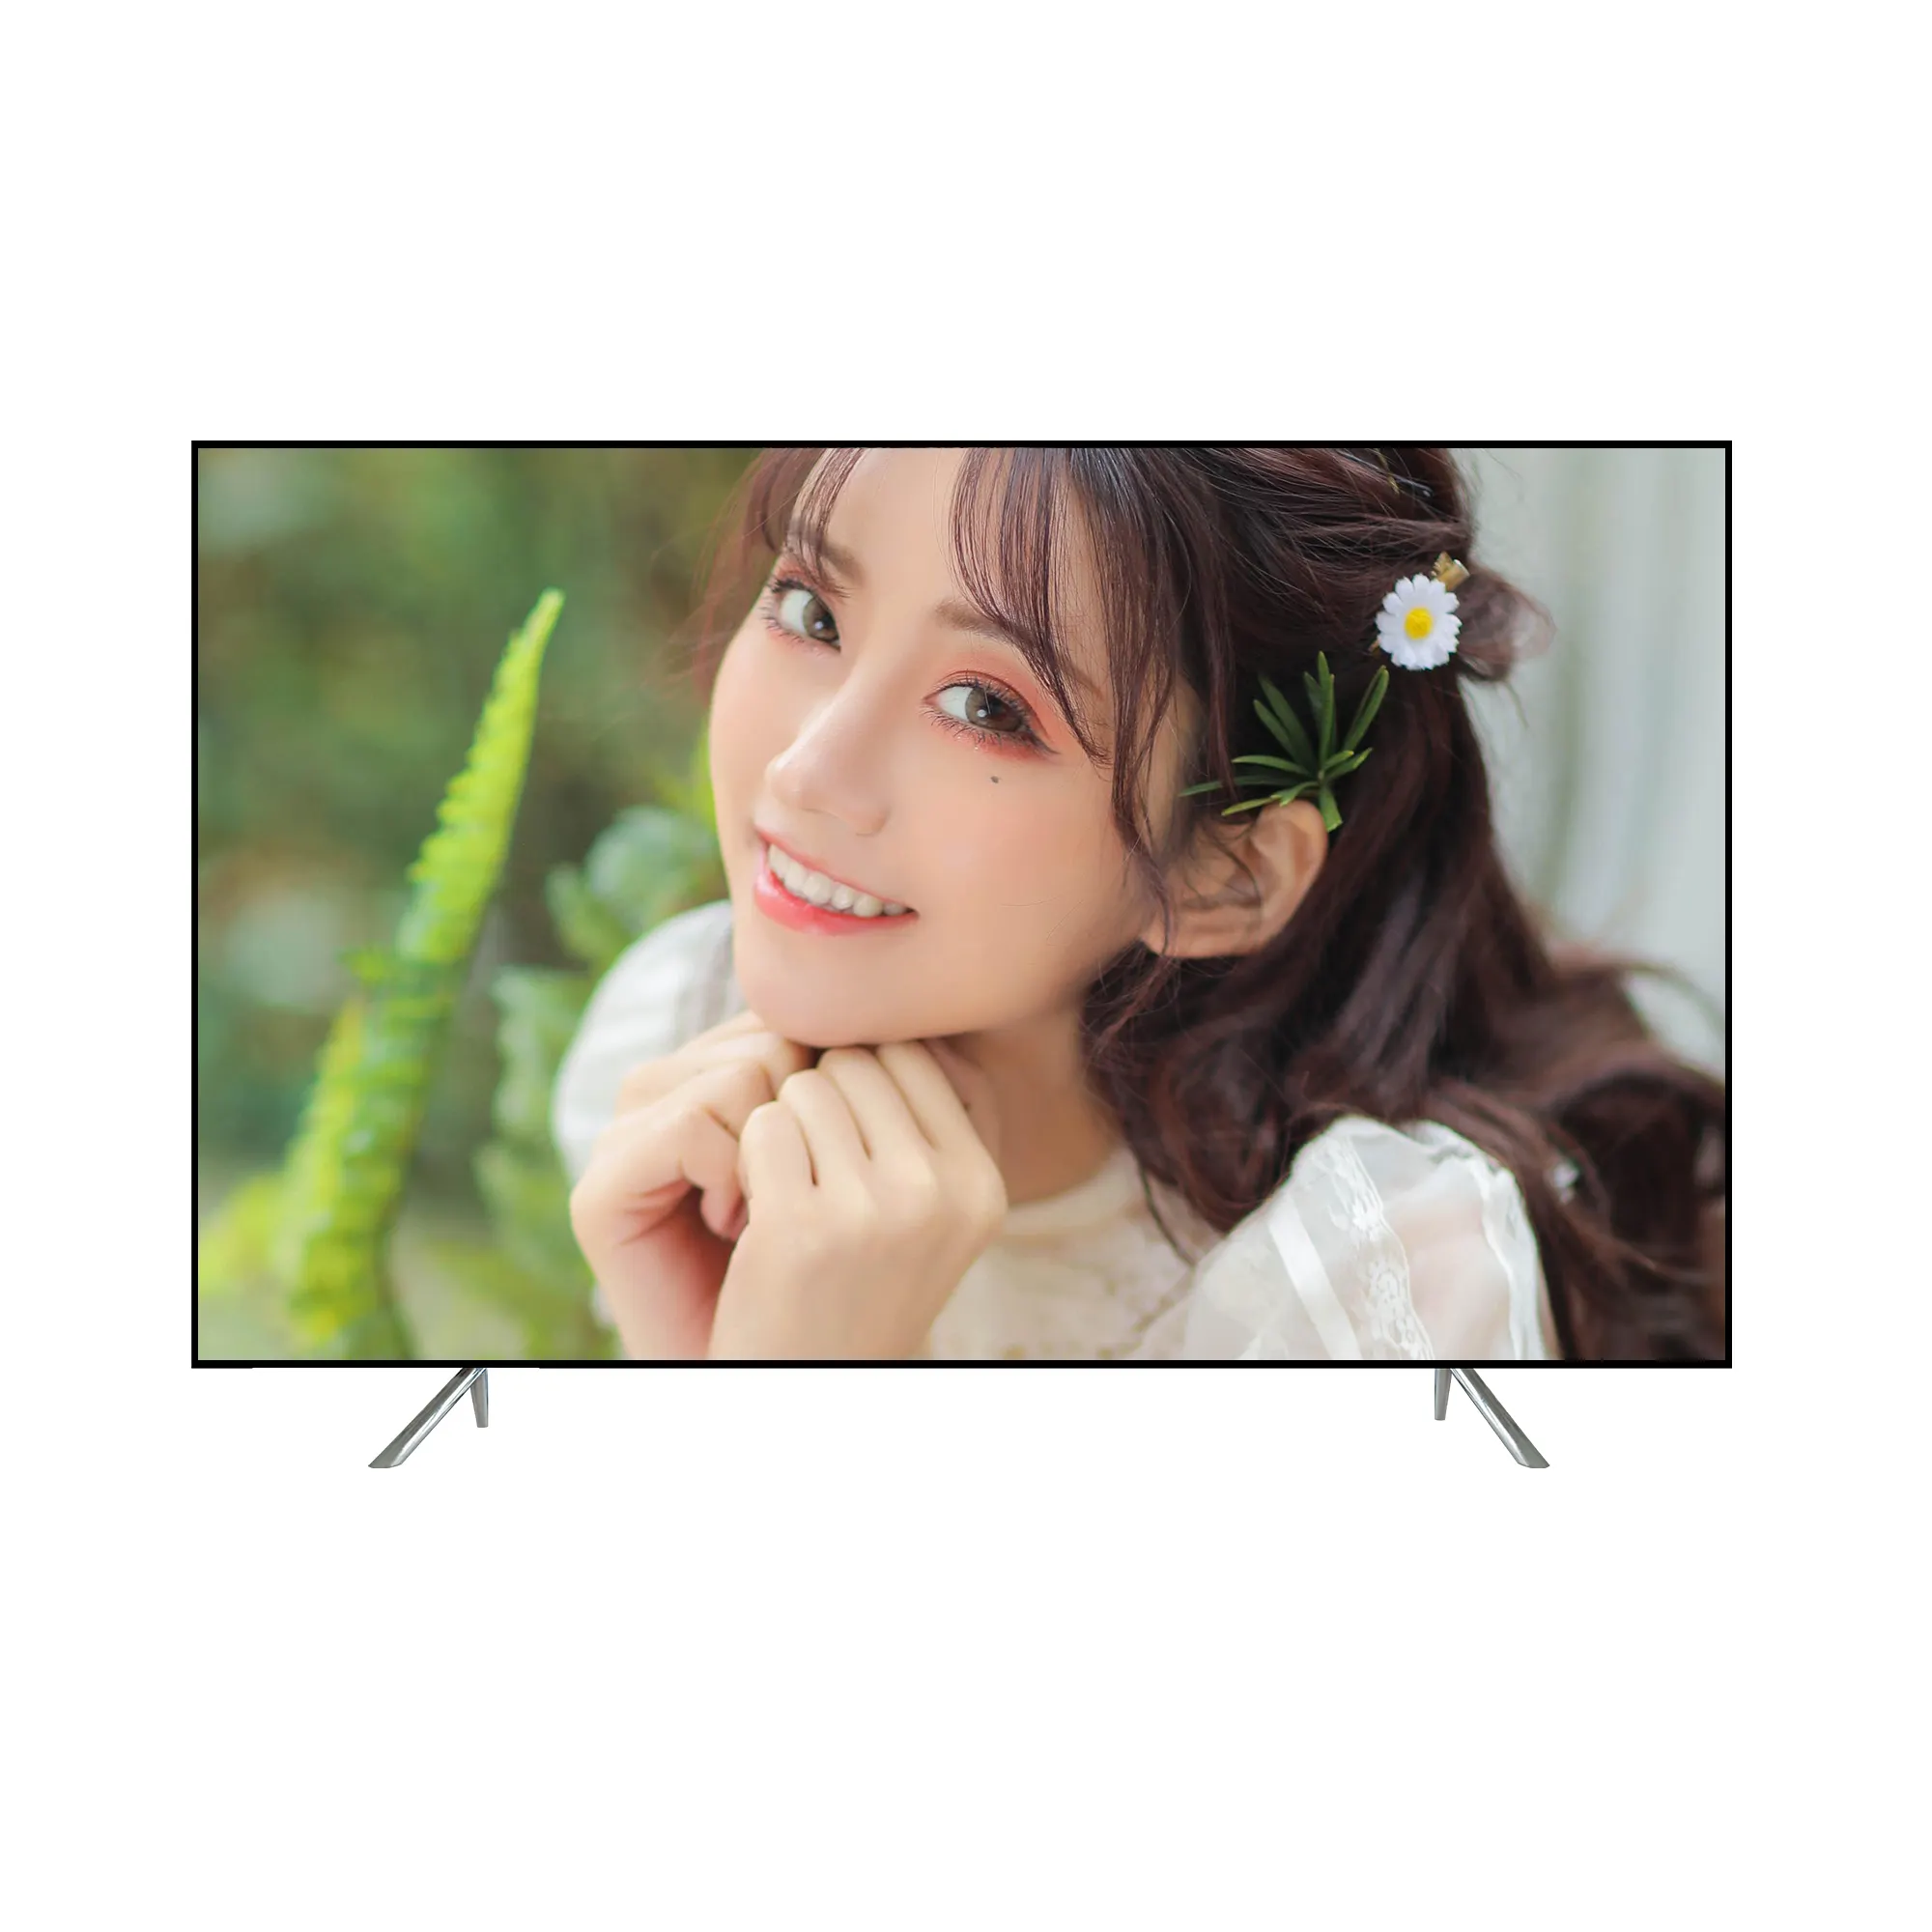 4k स्मार्ट टीवी 100 इंच 4K अल्ट्रा पतली एंड्रॉयड टेलीविजन SOZN ब्रांड टीवी का नेतृत्व किया